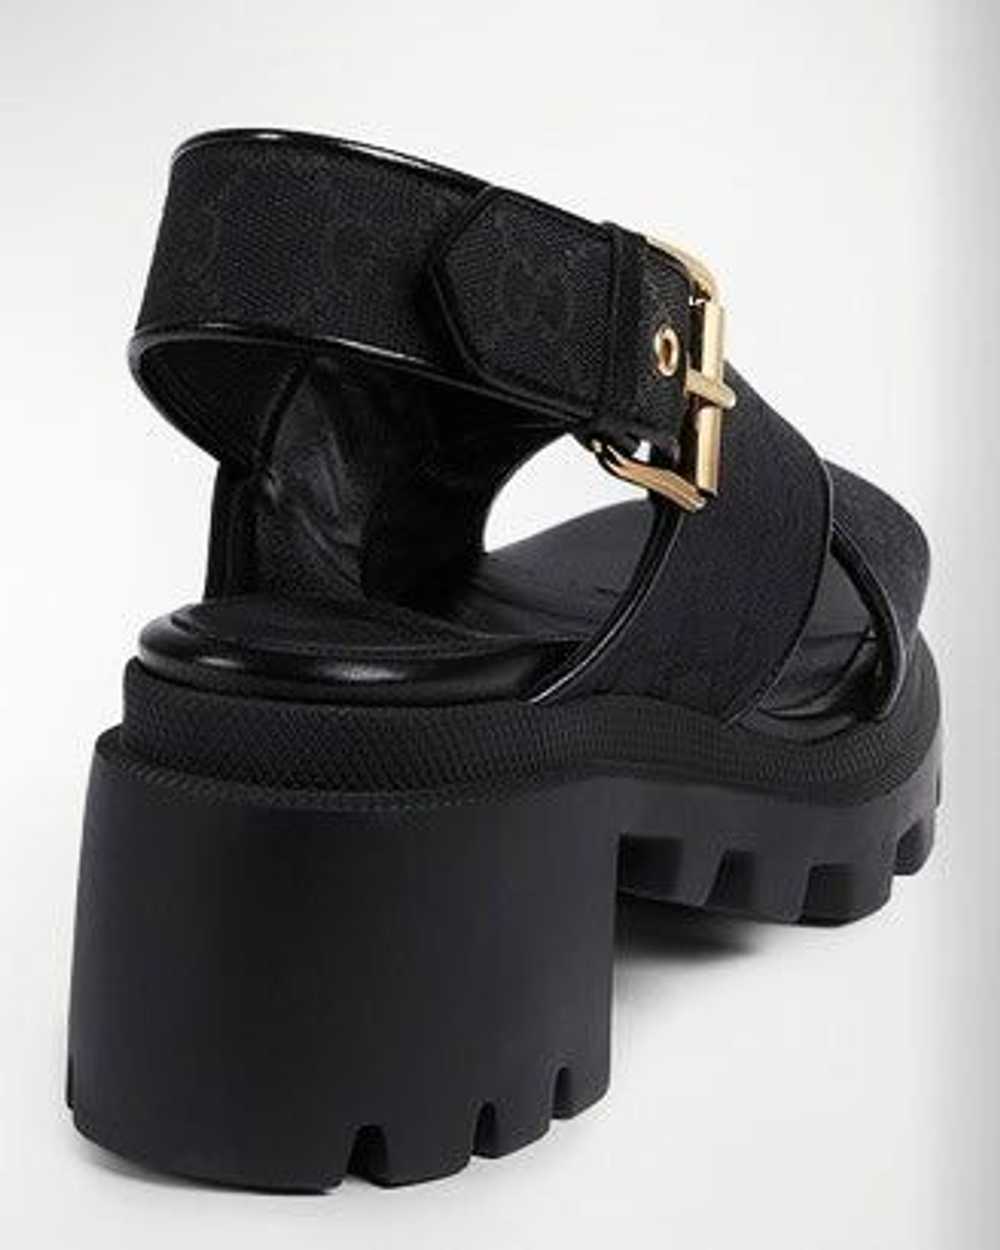 Gucci Gucci GG Supreme Lug Sole Sandals SIZE 39.5 - image 3